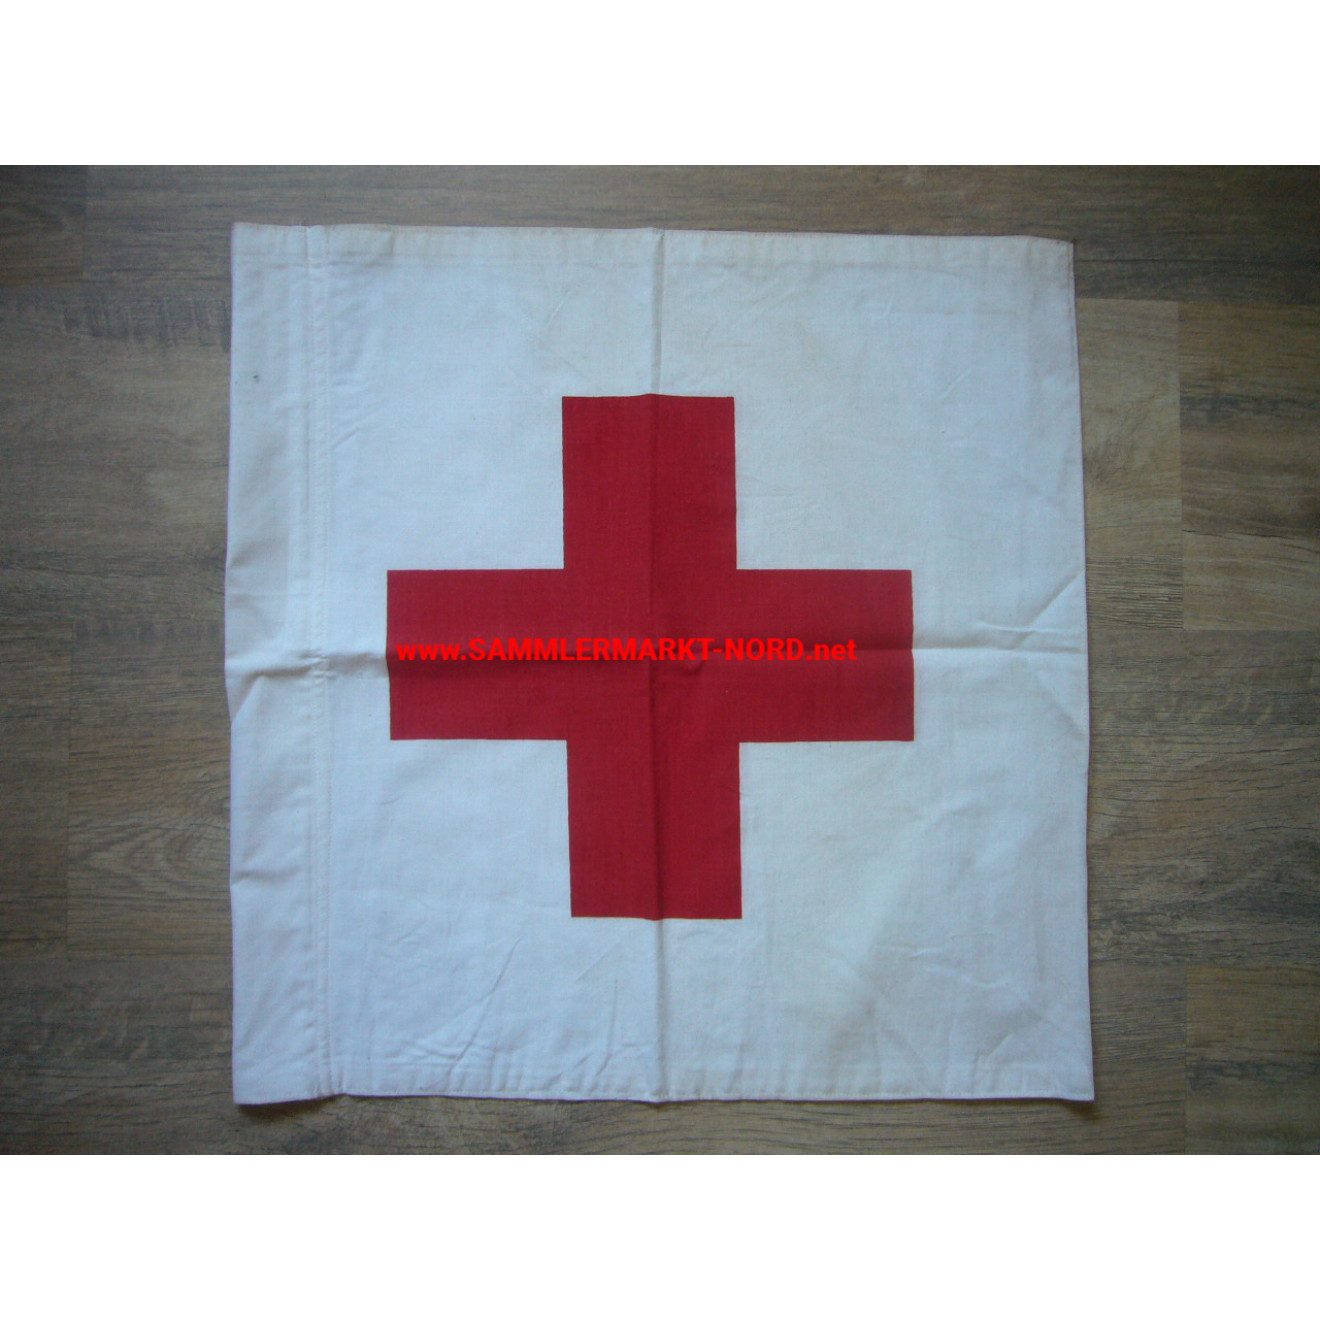 DRK Red Cross - flag